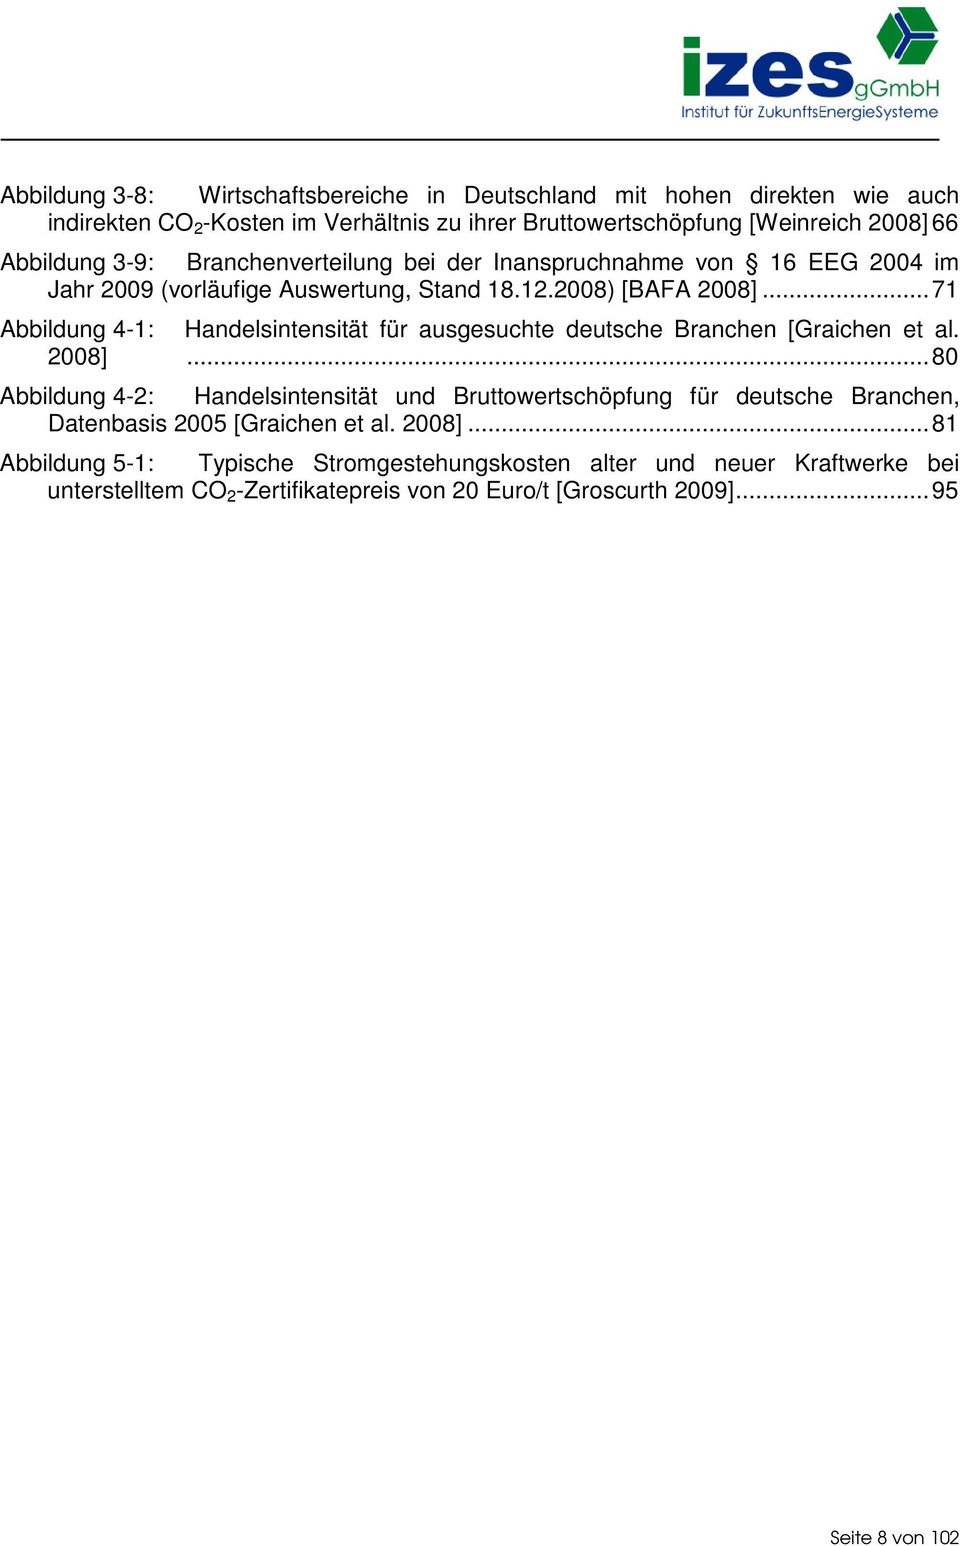 ..71 Abbildung 4-1: Handelsintensität für ausgesuchte deutsche Branchen [Graichen et al. 2008].